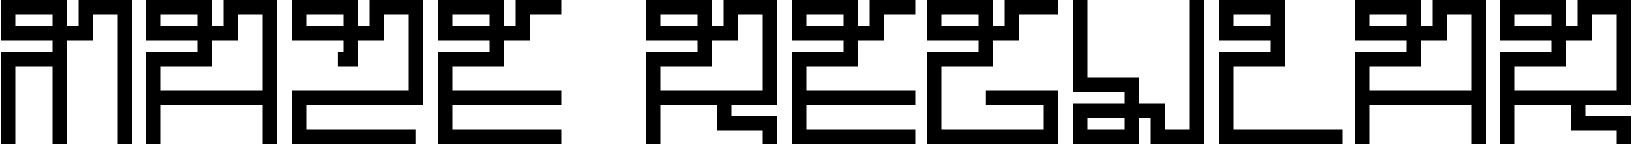 Maze Regular font - maze.otf